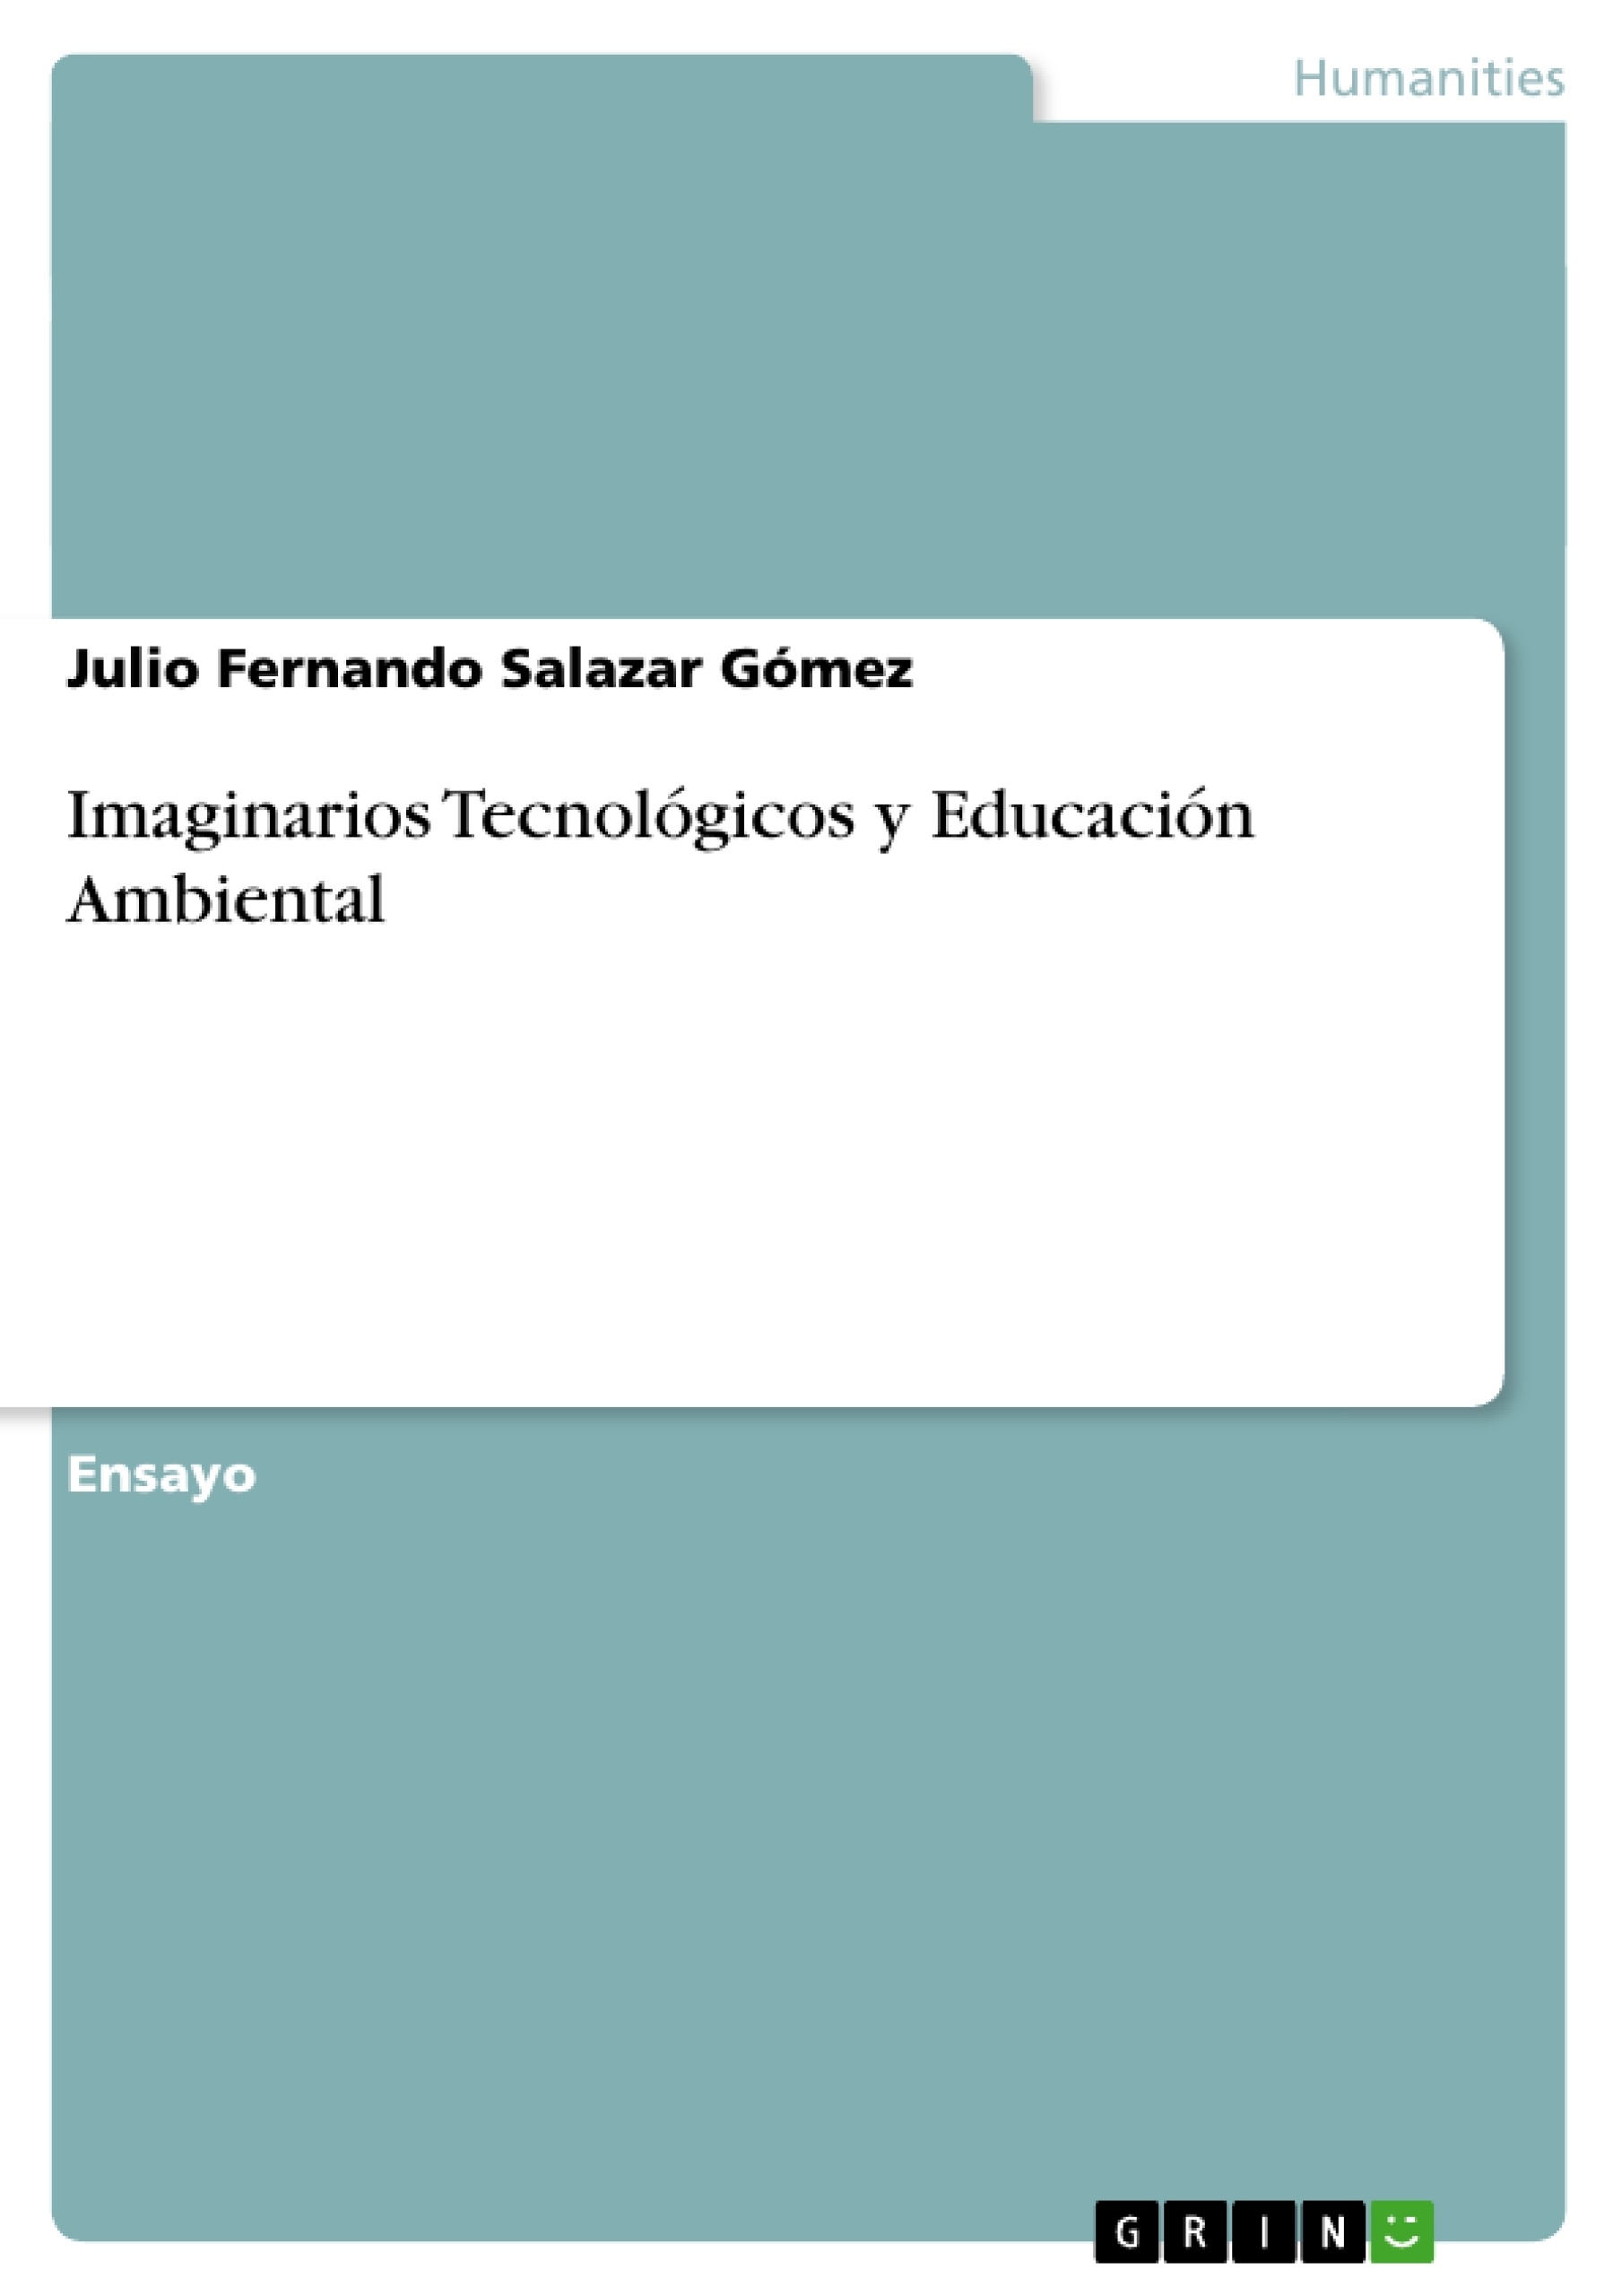 Title: Imaginarios Tecnológicos y Educación Ambiental